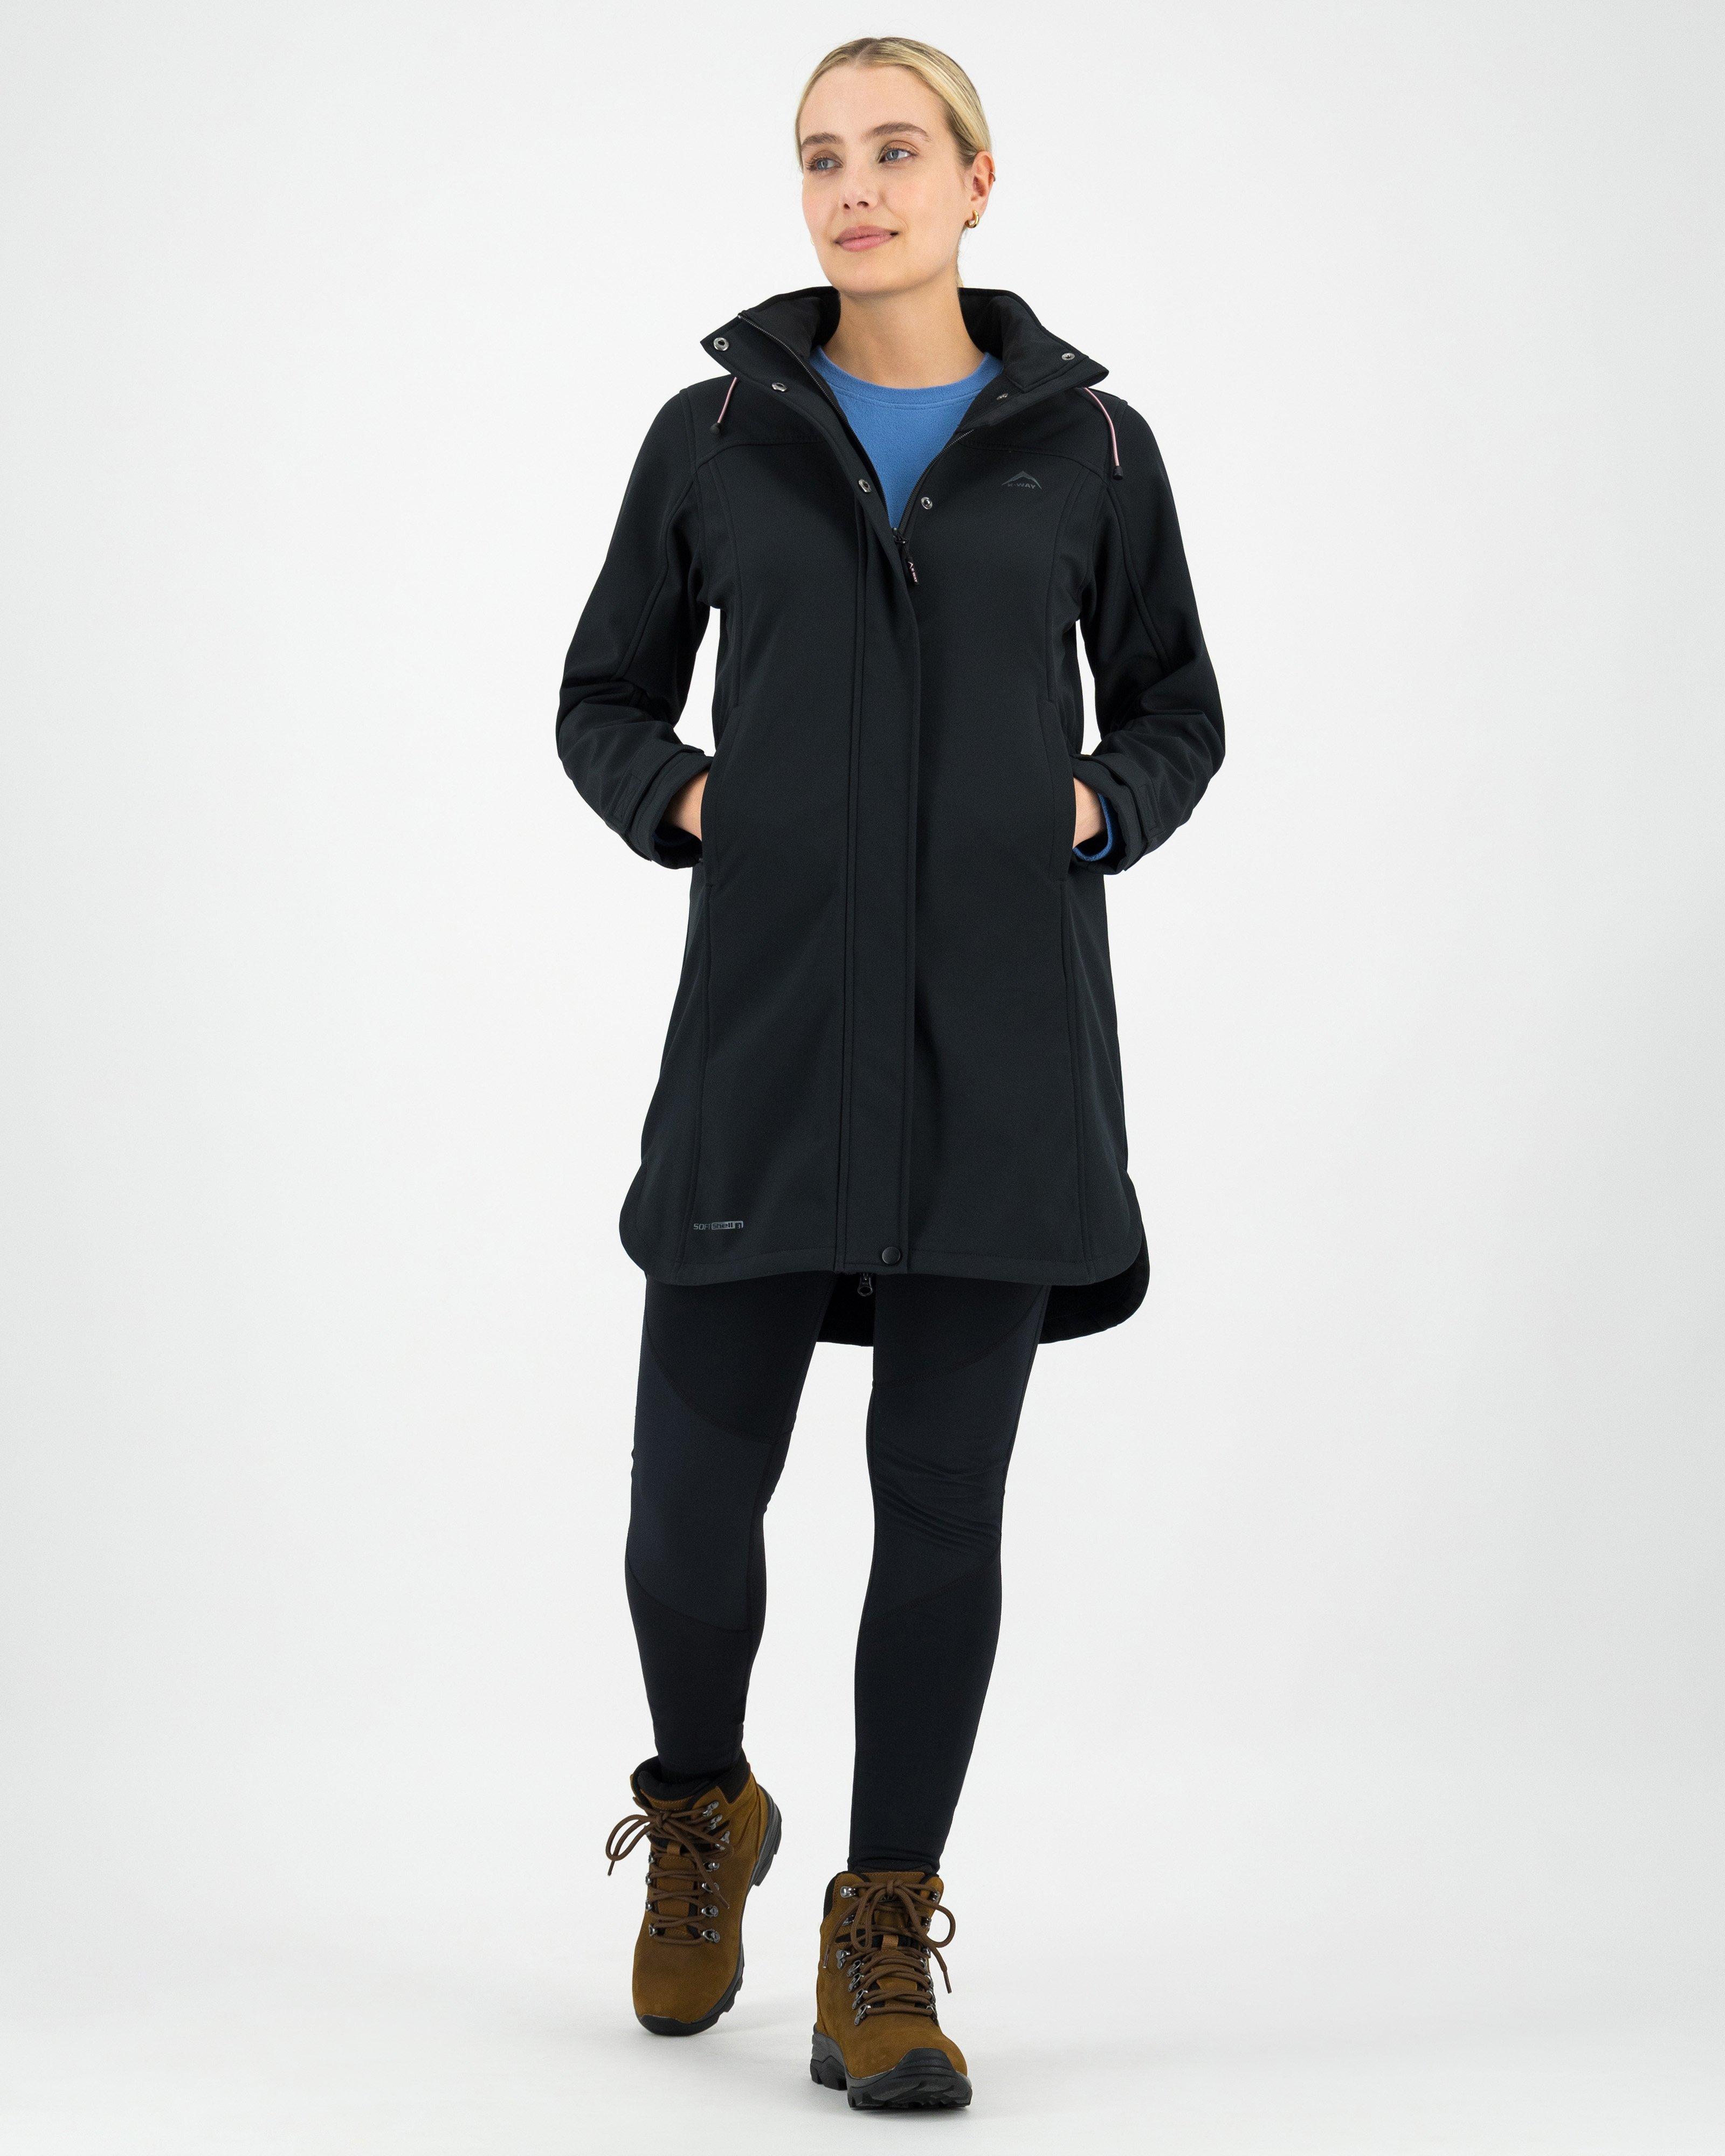 K-Way Women’s Acadia Softshell Coat -  Black